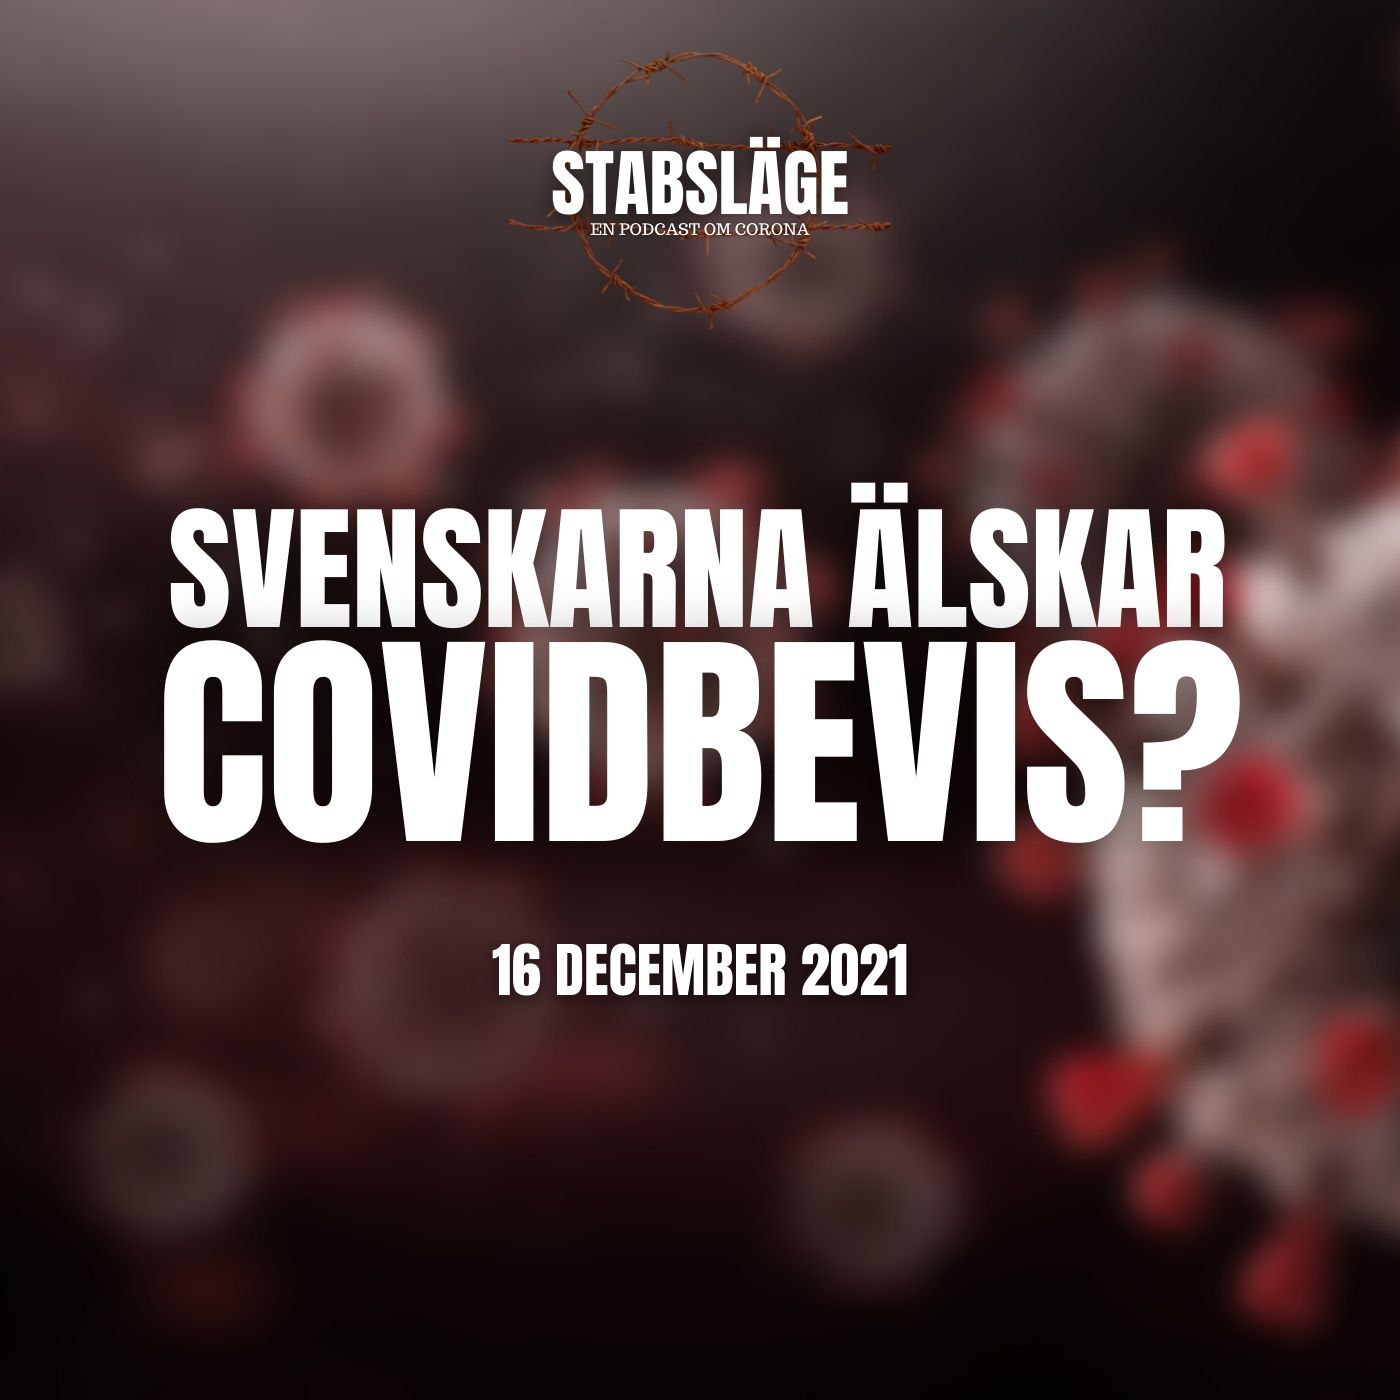 7. Svenskarna älskar covidbevis?